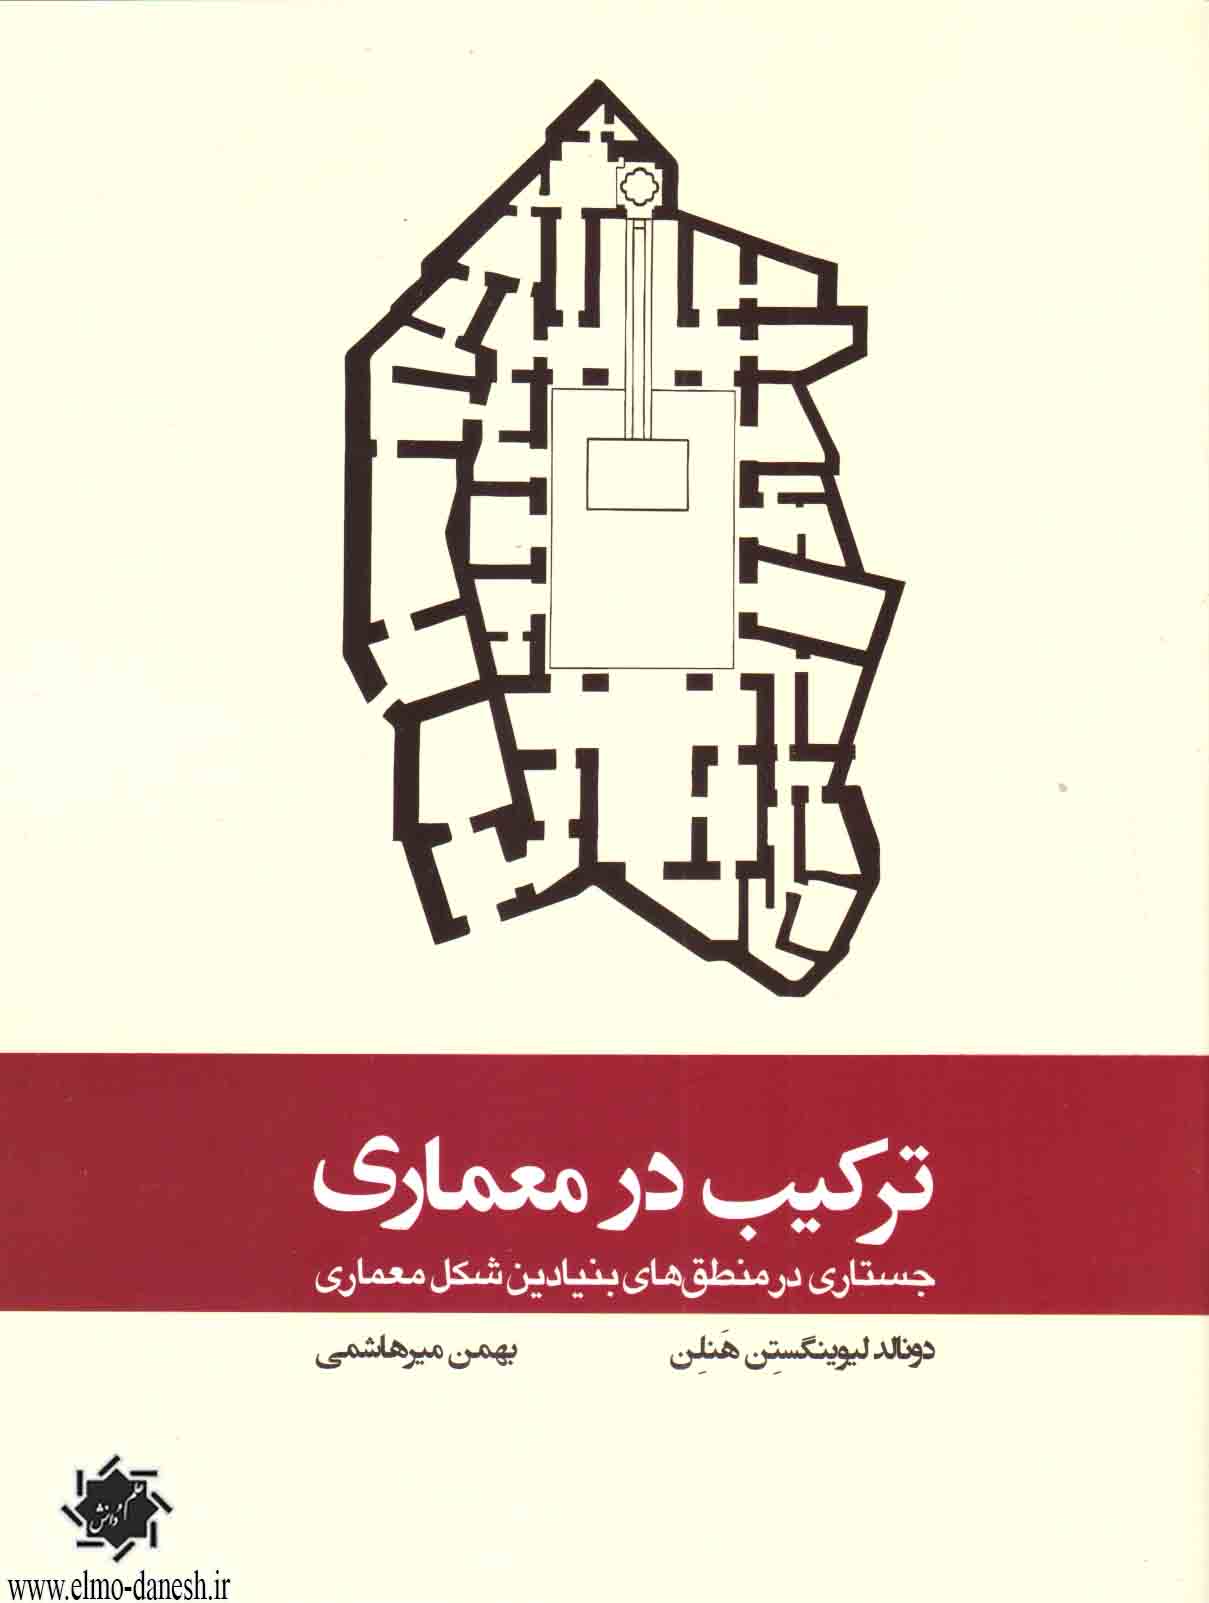 1353 101 نکته طراحی معماری برای معلولین - انتشارات علم و دانش